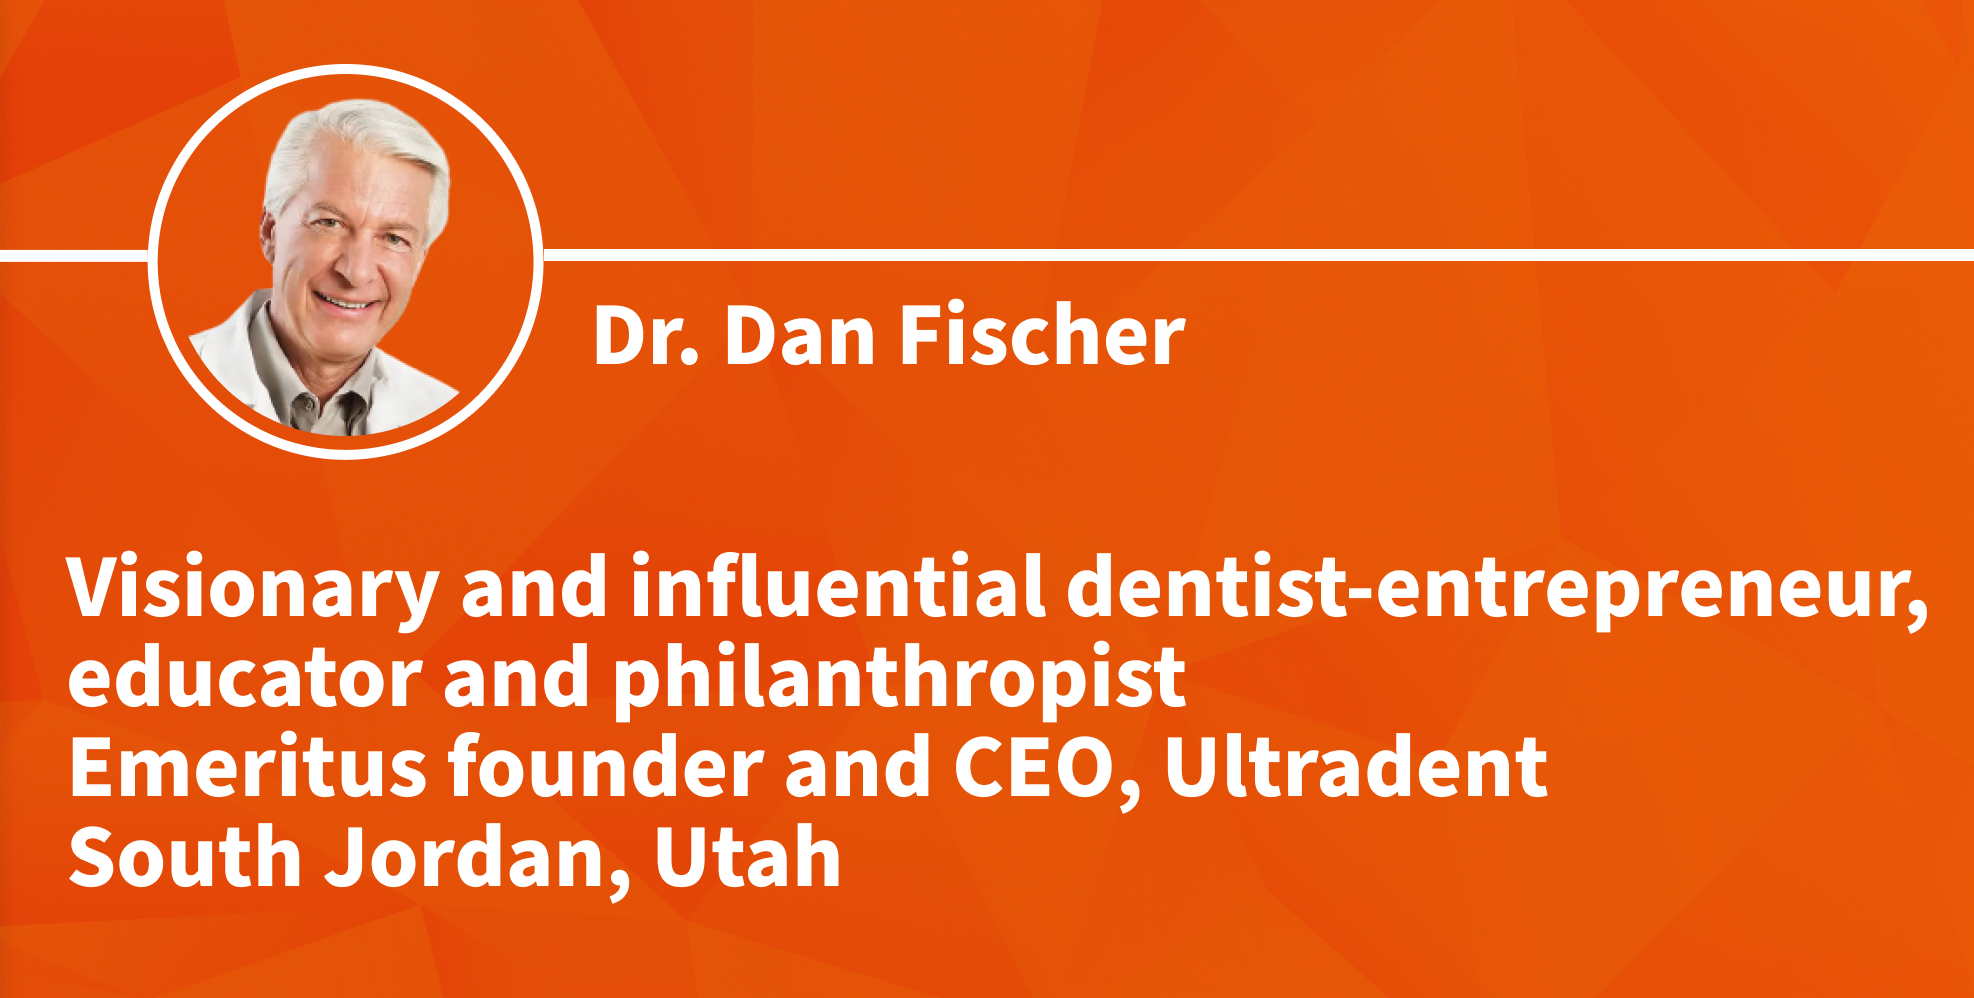 dr. fischer